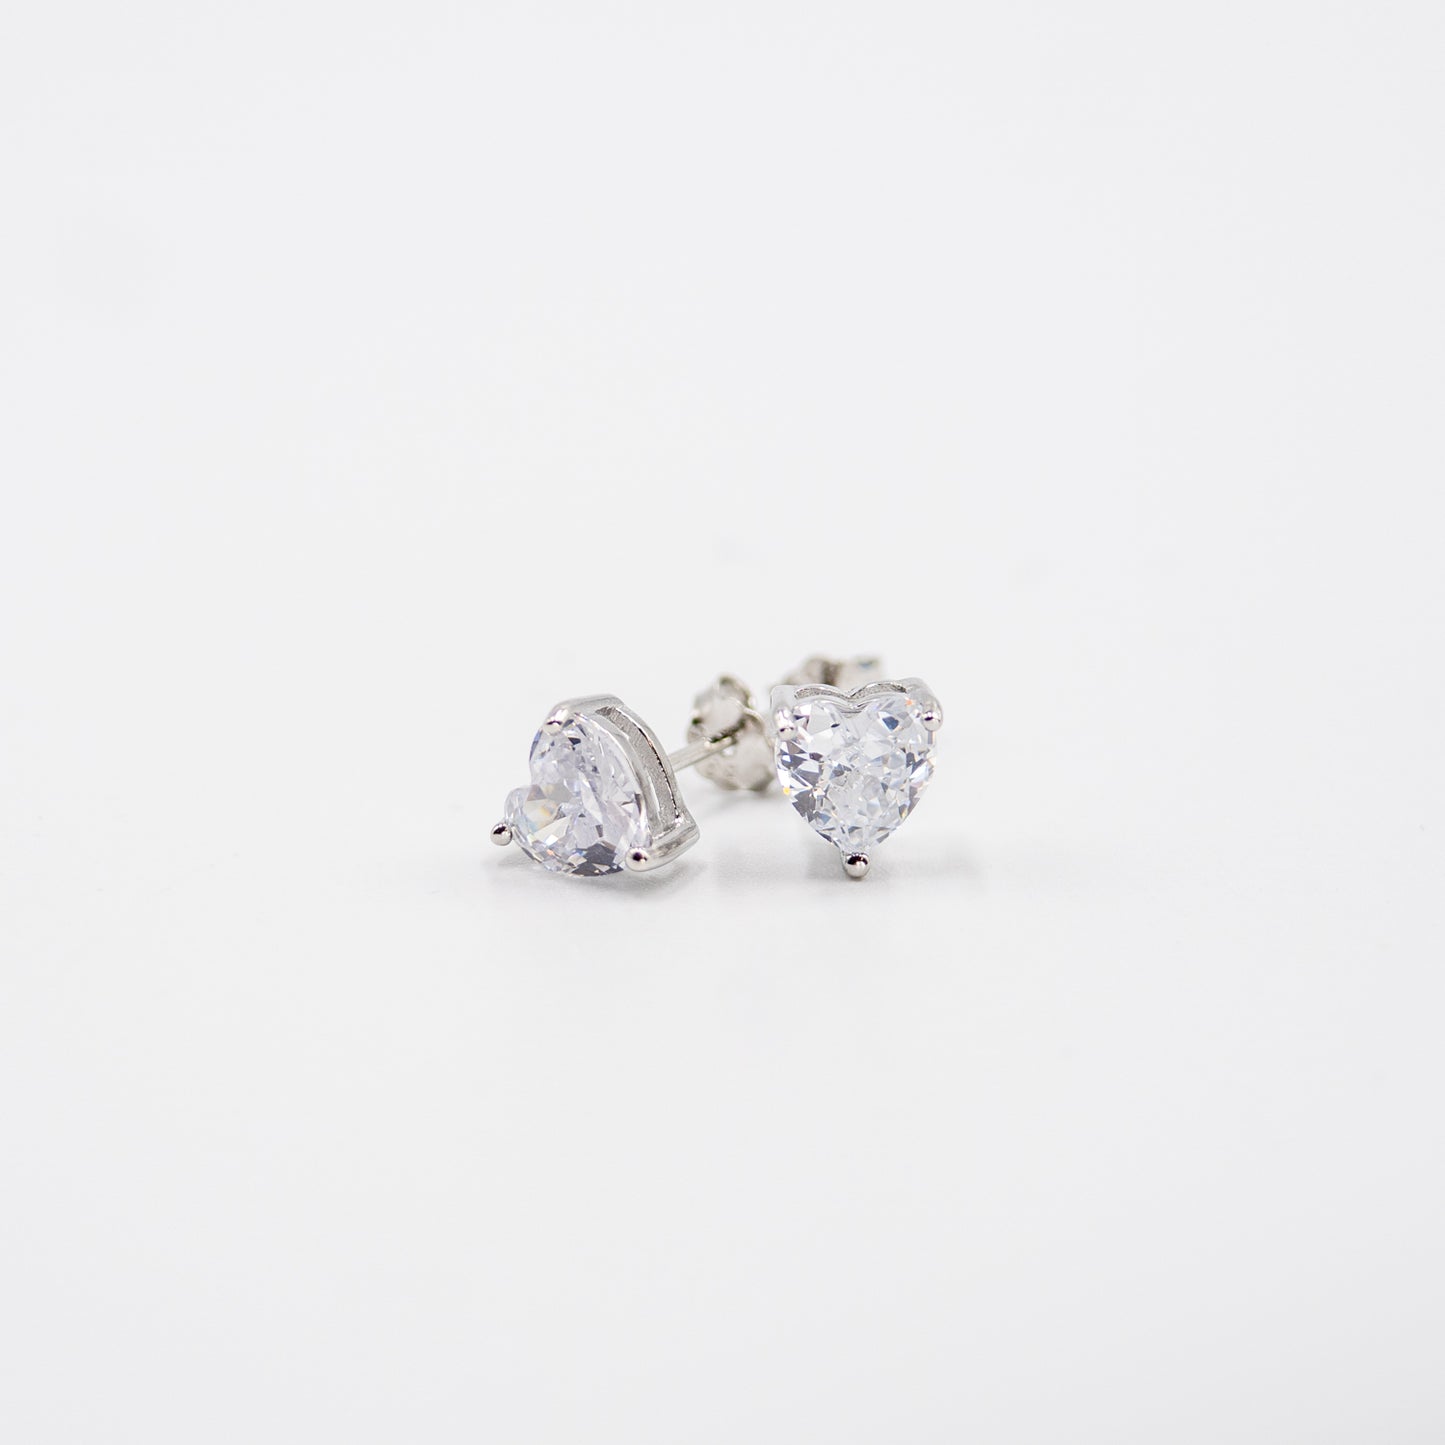 DK-925-190 sterling silver earrings